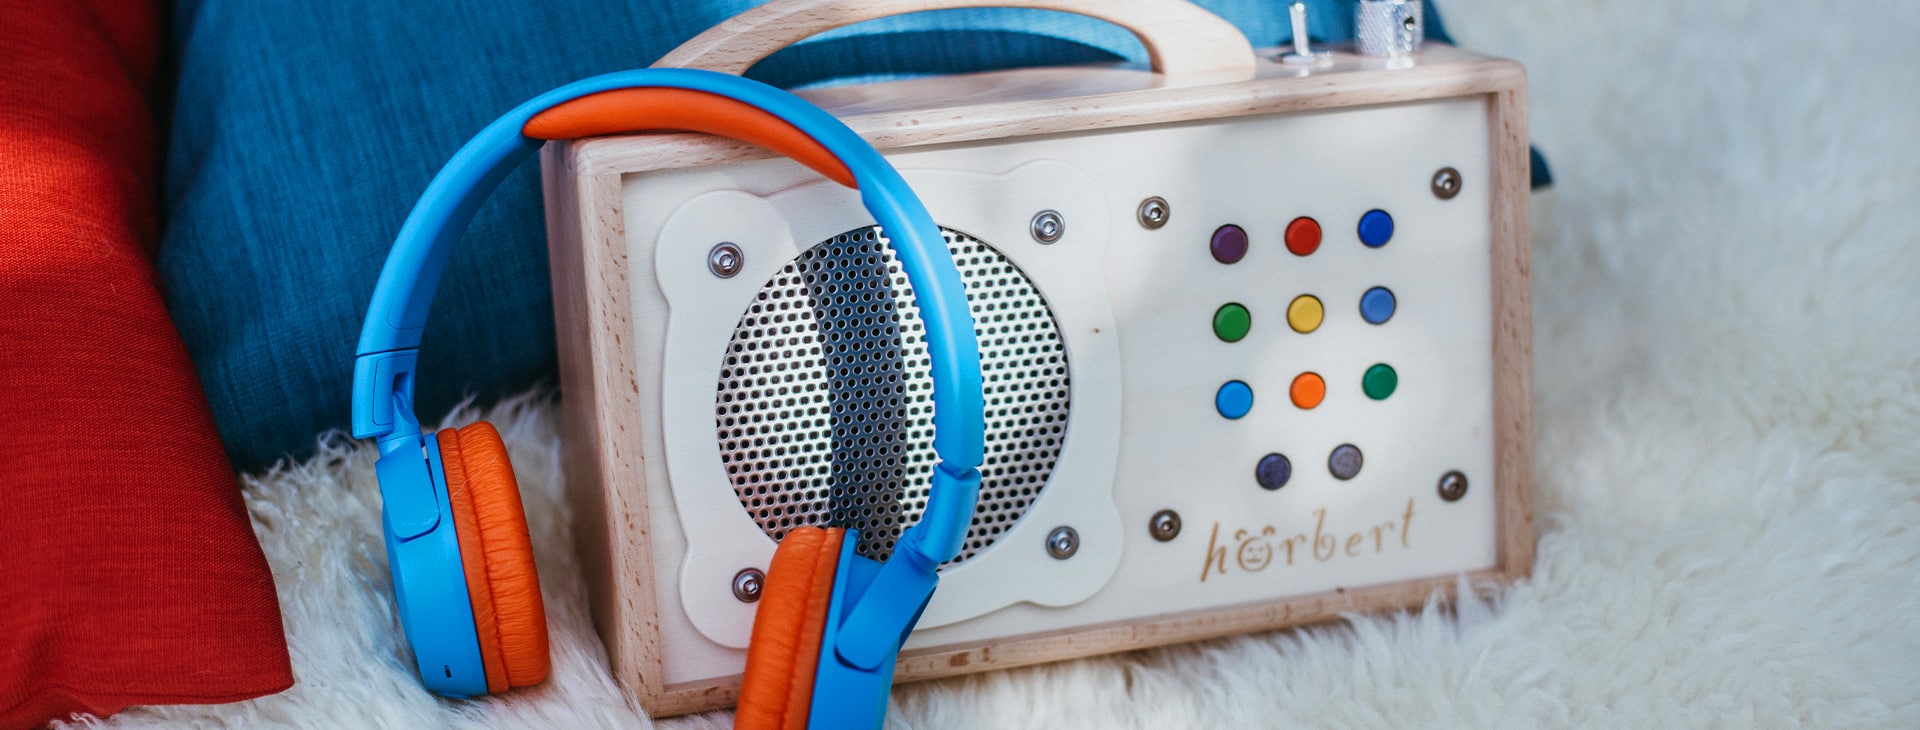 hörbert - le lecteur mp3 pour enfants avec des écouteurs Bluetooth JBL en bleu-orange